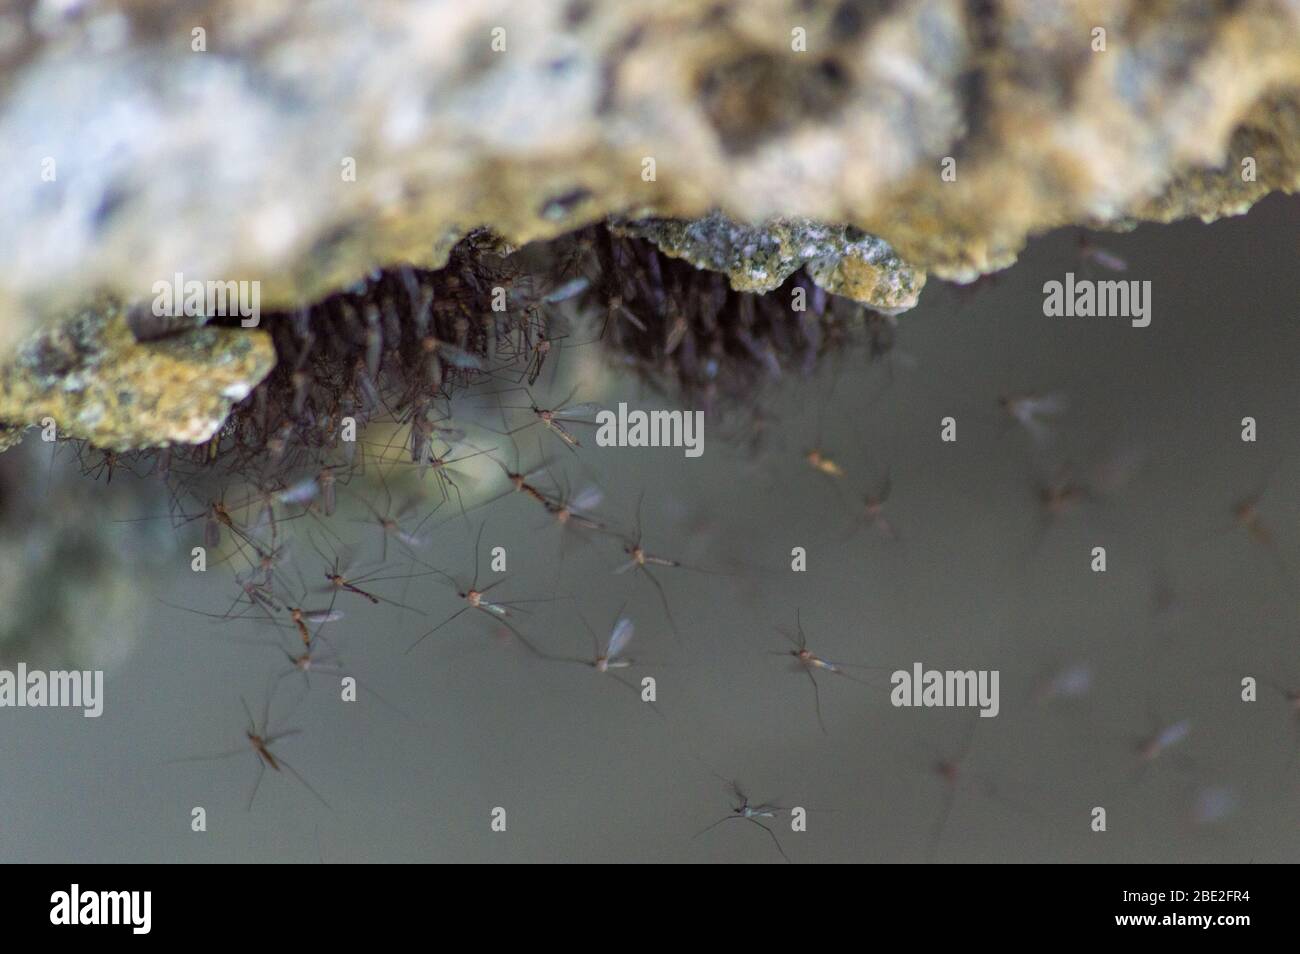 Las moscas nematocerancas anidan para su reproducción bajo una roca caliza en Raja Ampat, provincia de Papúa Occidental, Indonesia Foto de stock